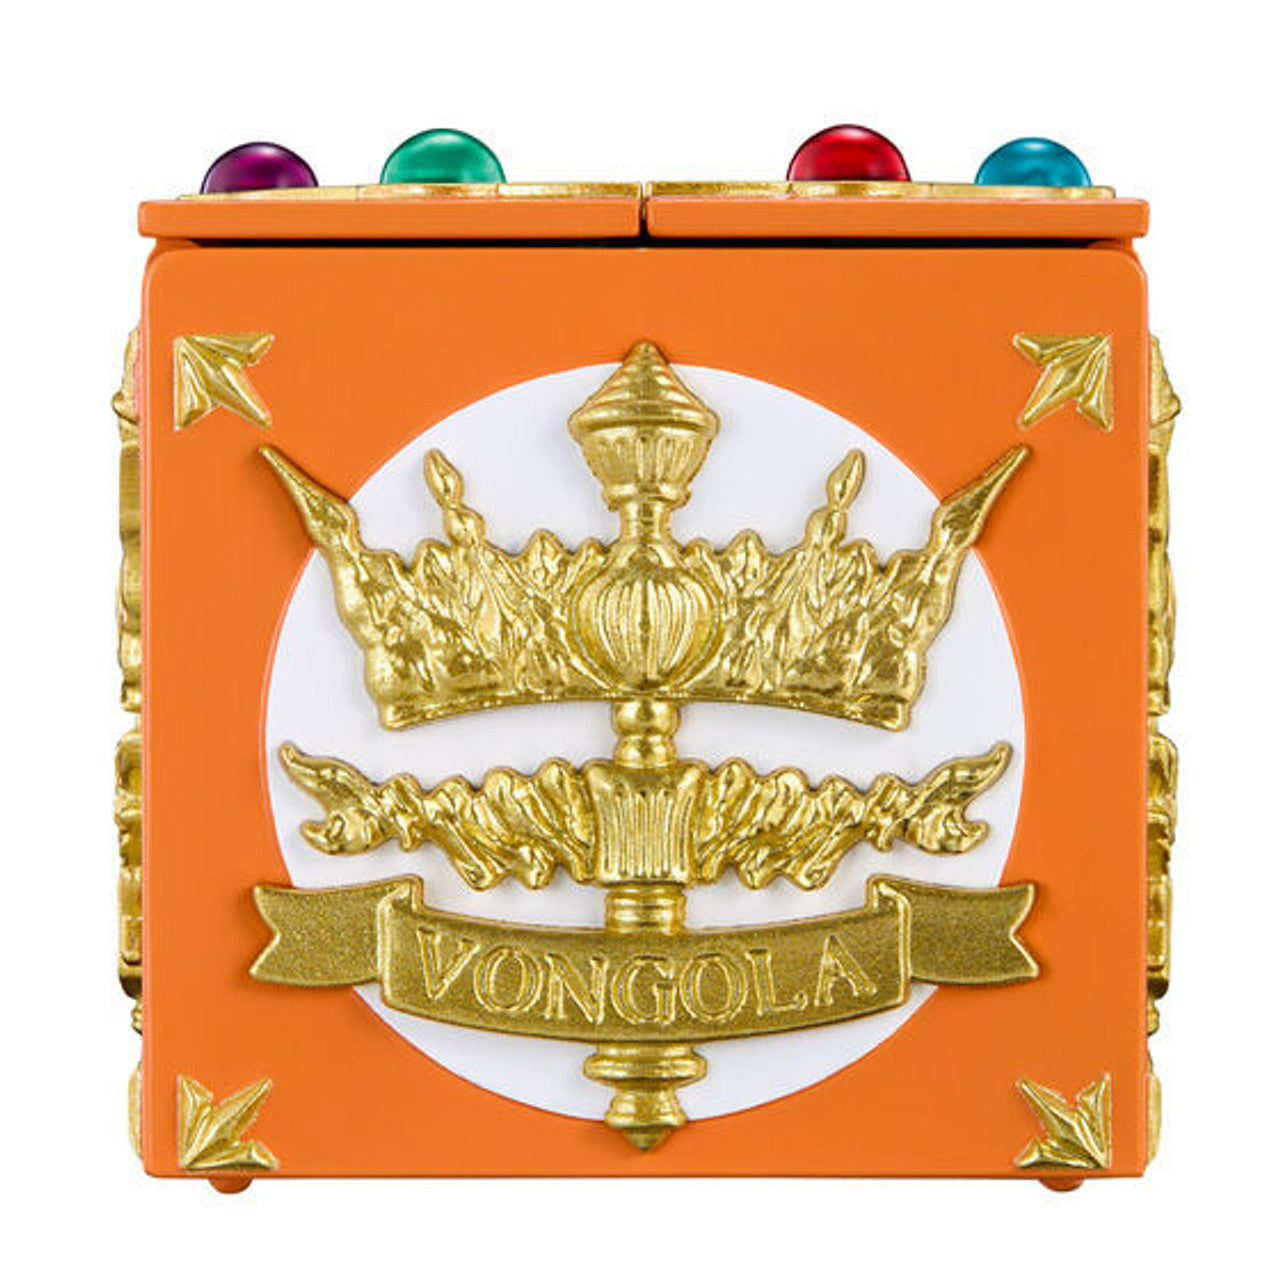 Bandai - Arsenal Toy - Katekyo Hitman Reborn! - Special Memorize Vongola Box & Vongola Ring Set (Tsunayoshi Sawada)